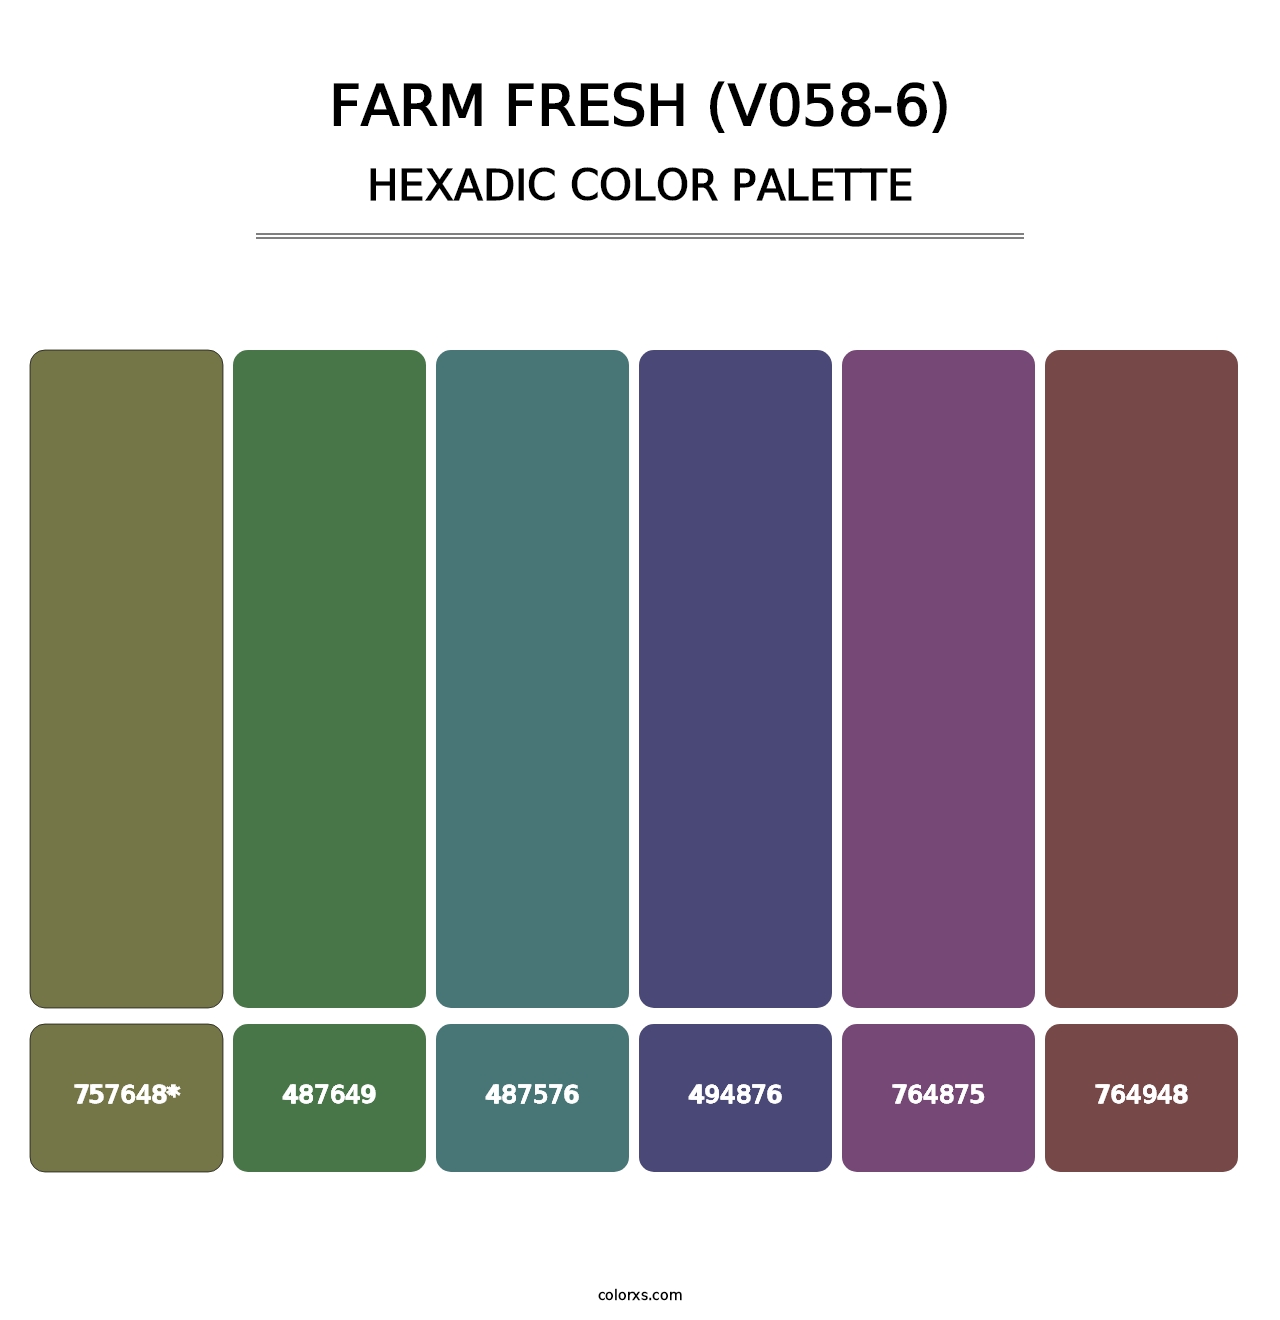 Farm Fresh (V058-6) - Hexadic Color Palette